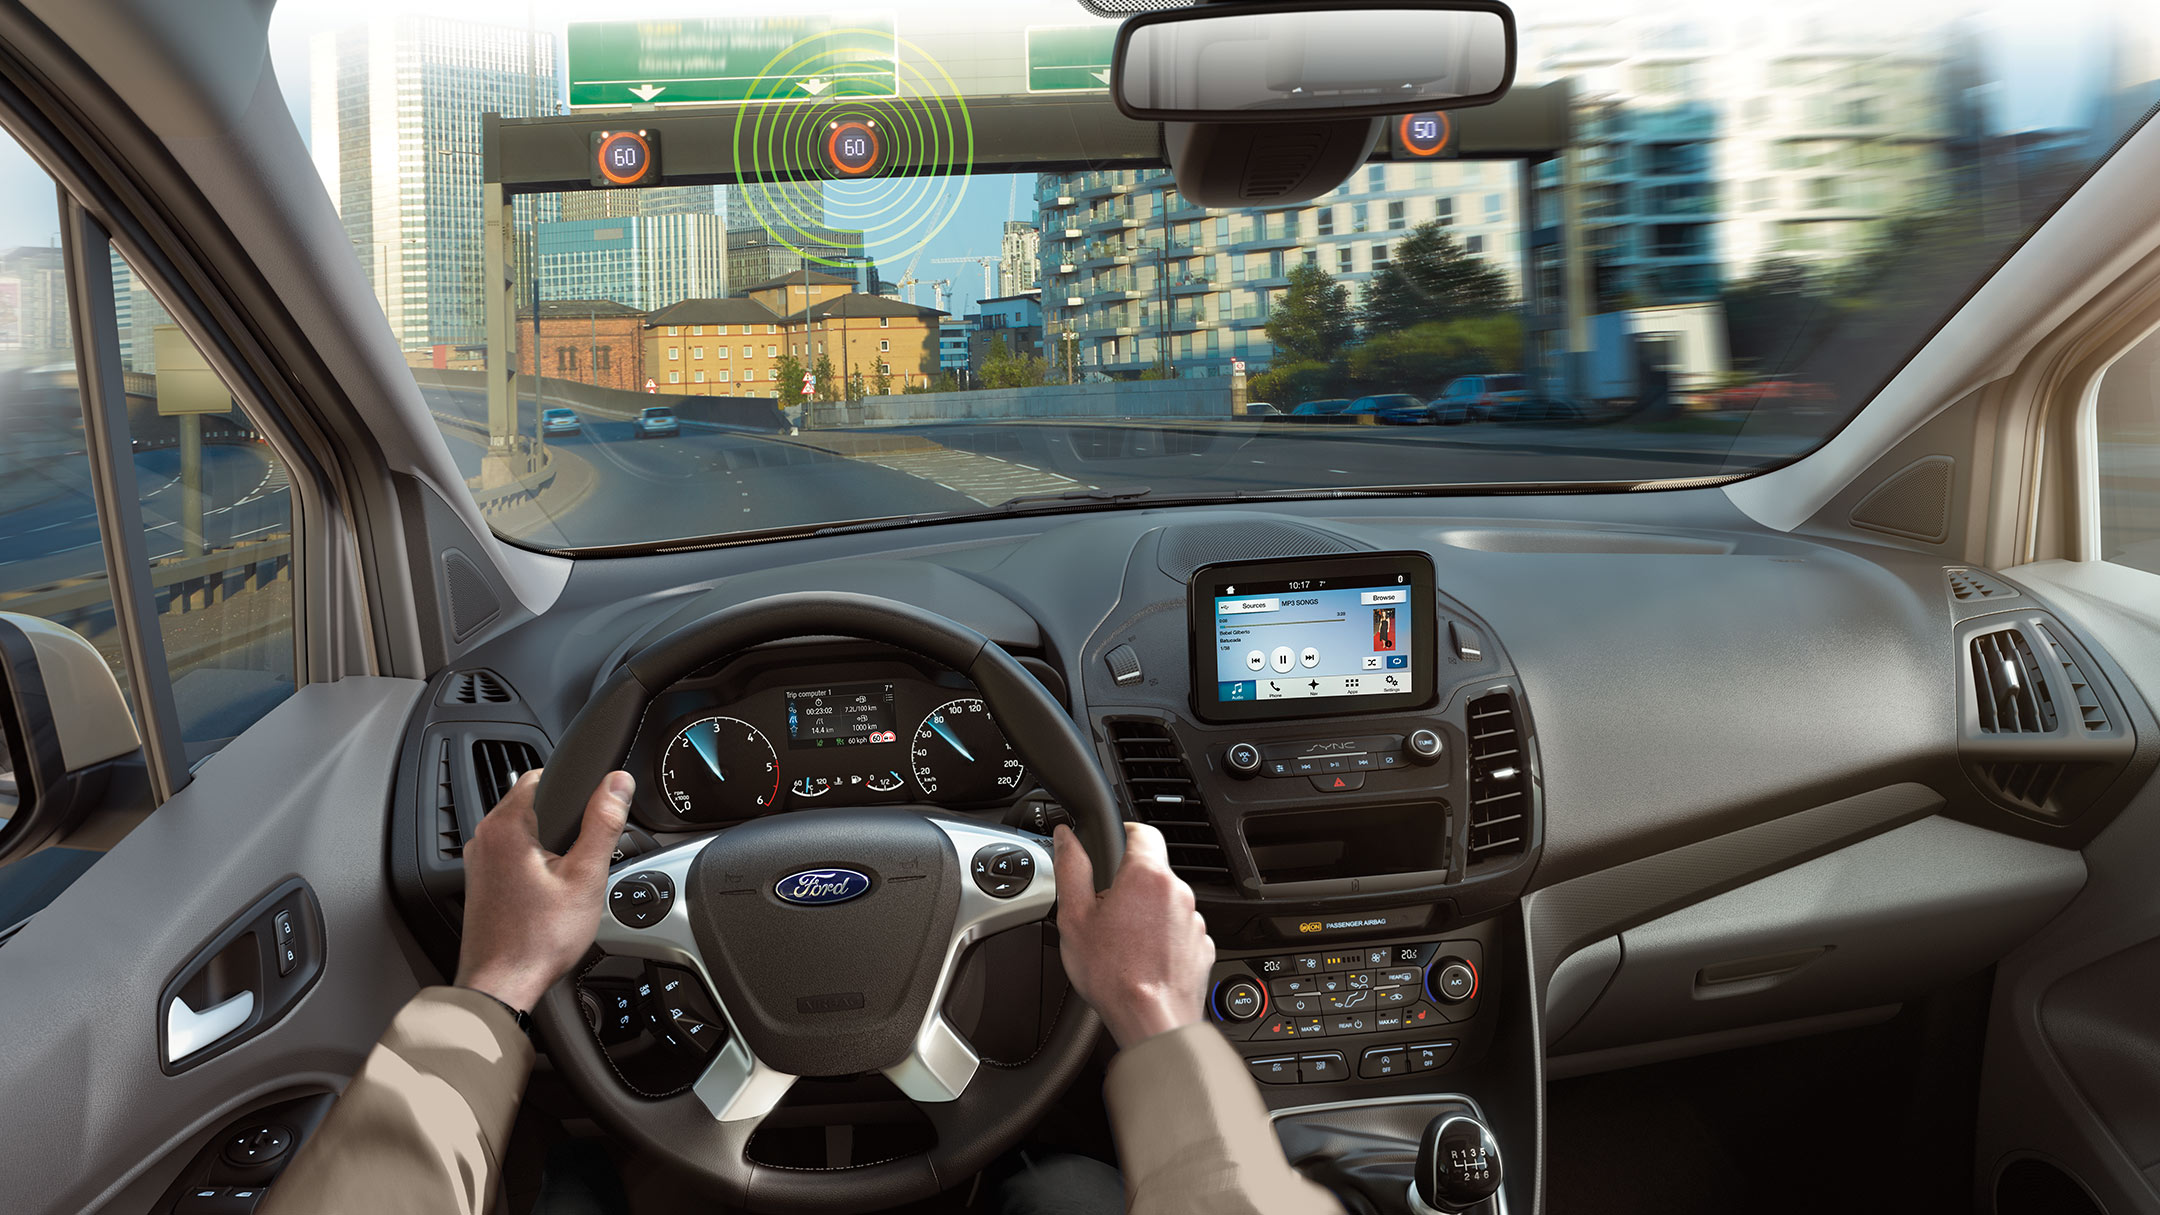 Ford Transit Connect Innenraum. Visualisierung Verkehrsschild-Erkennungssystem